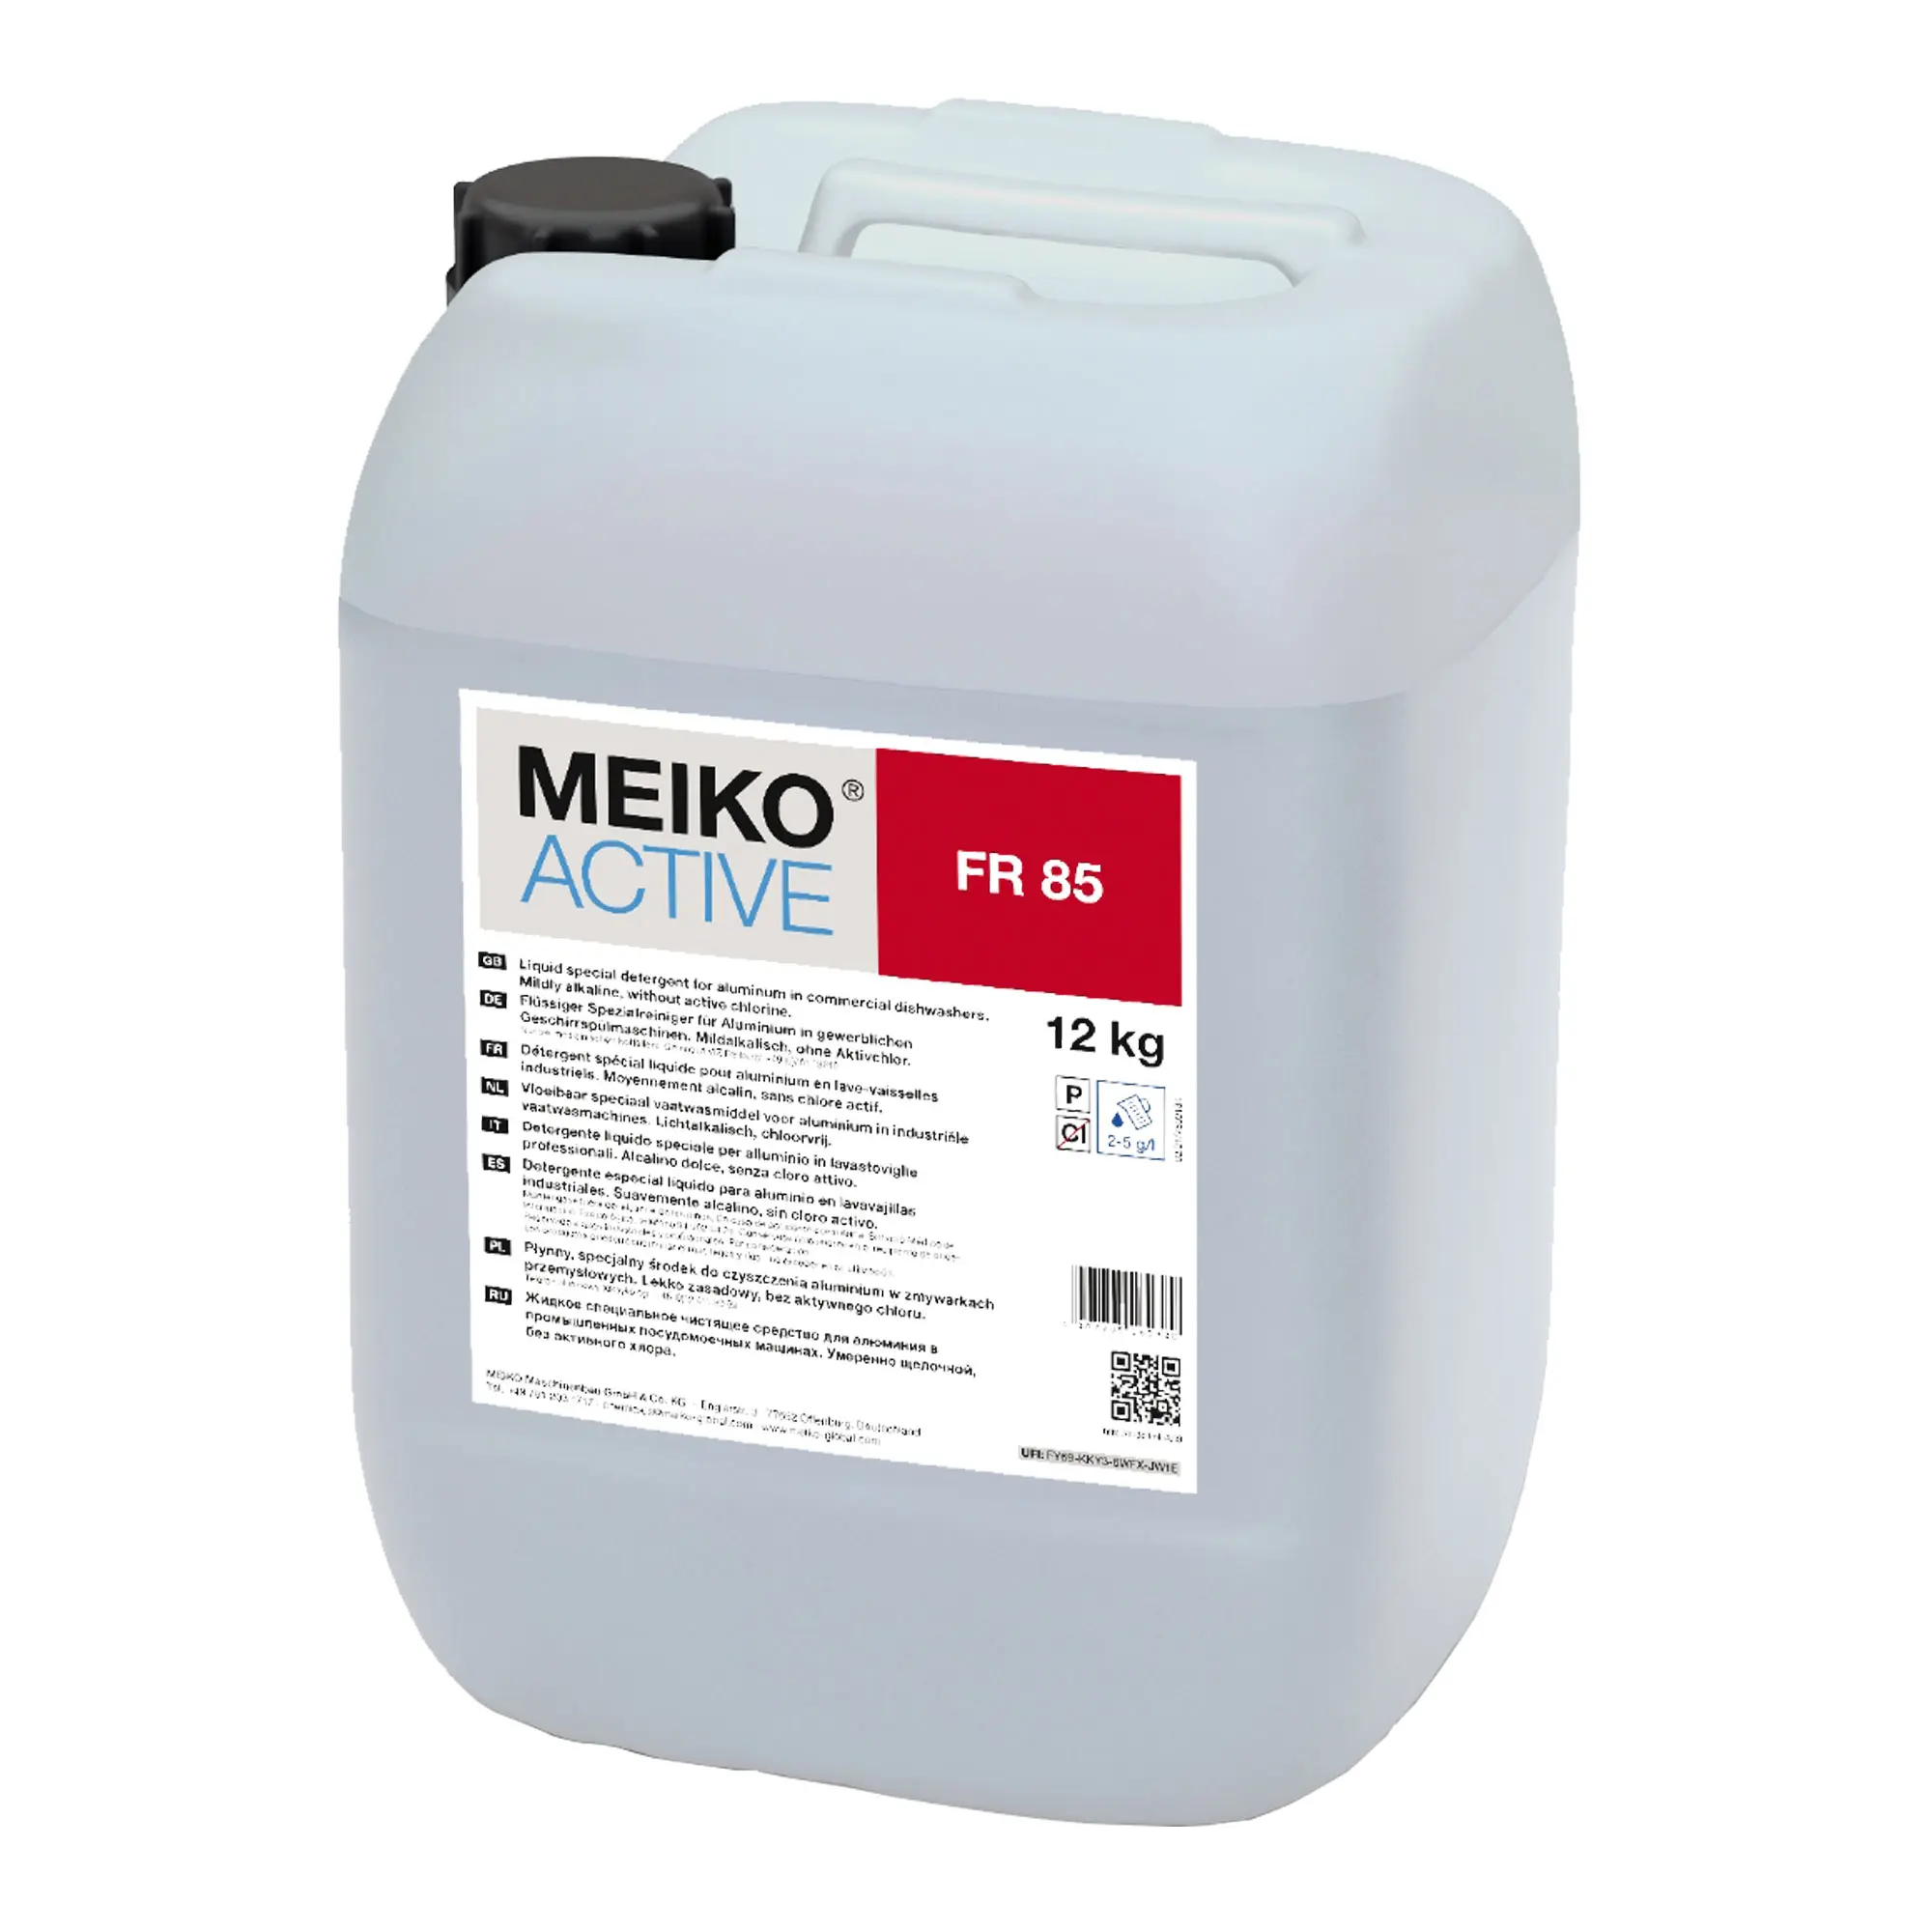 Meiko Active FR 86 flüssiger Reiniger für Verfärbungen